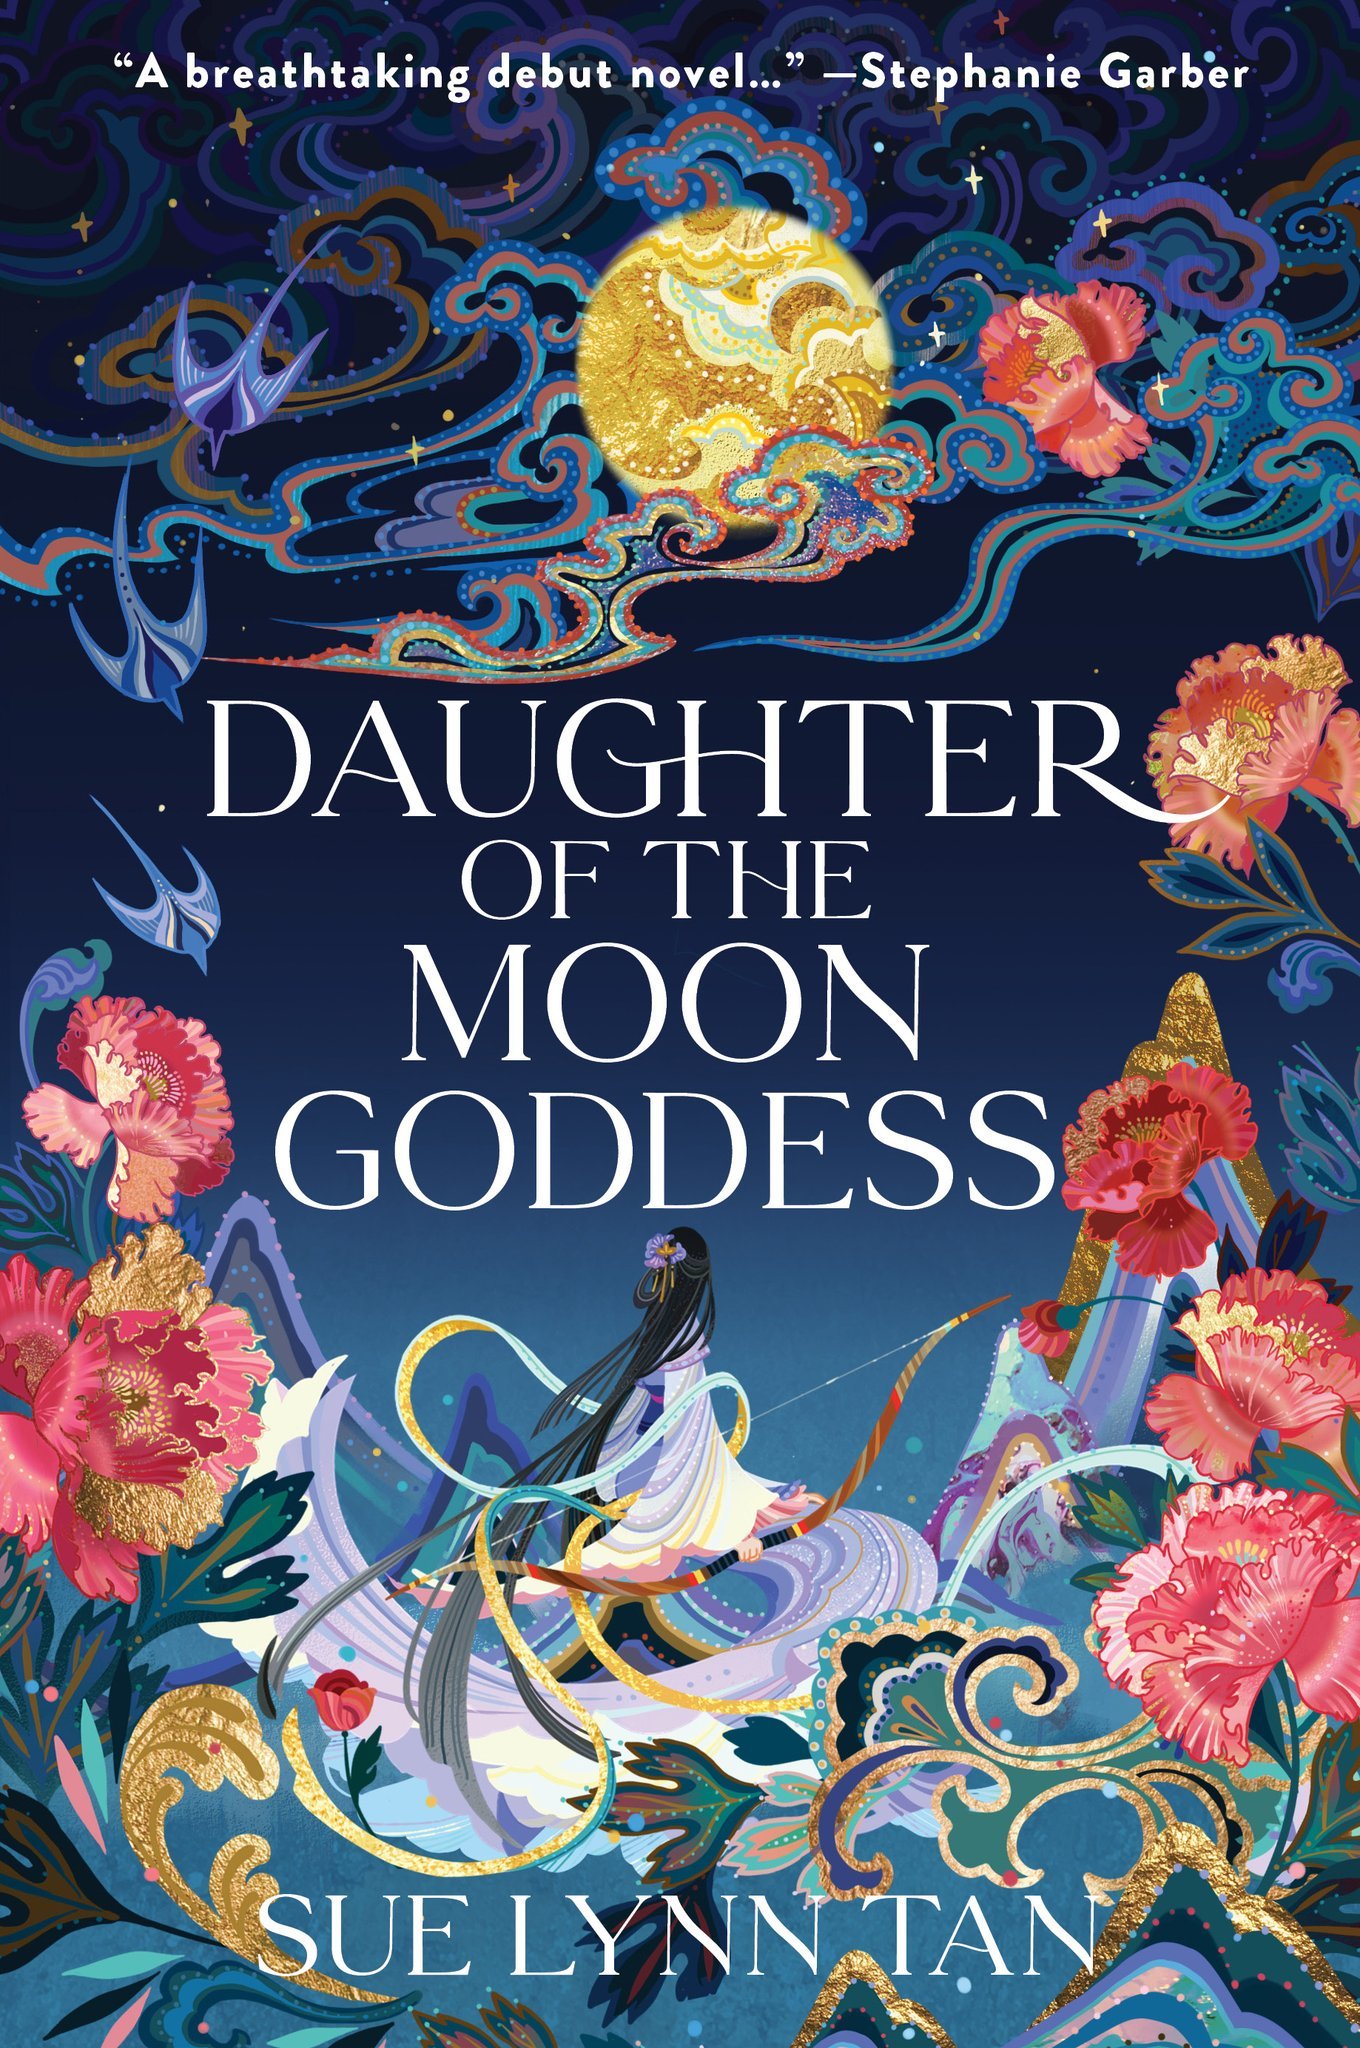 1. Jan 11 2022 Daughter of the Moon Goddess.jpg